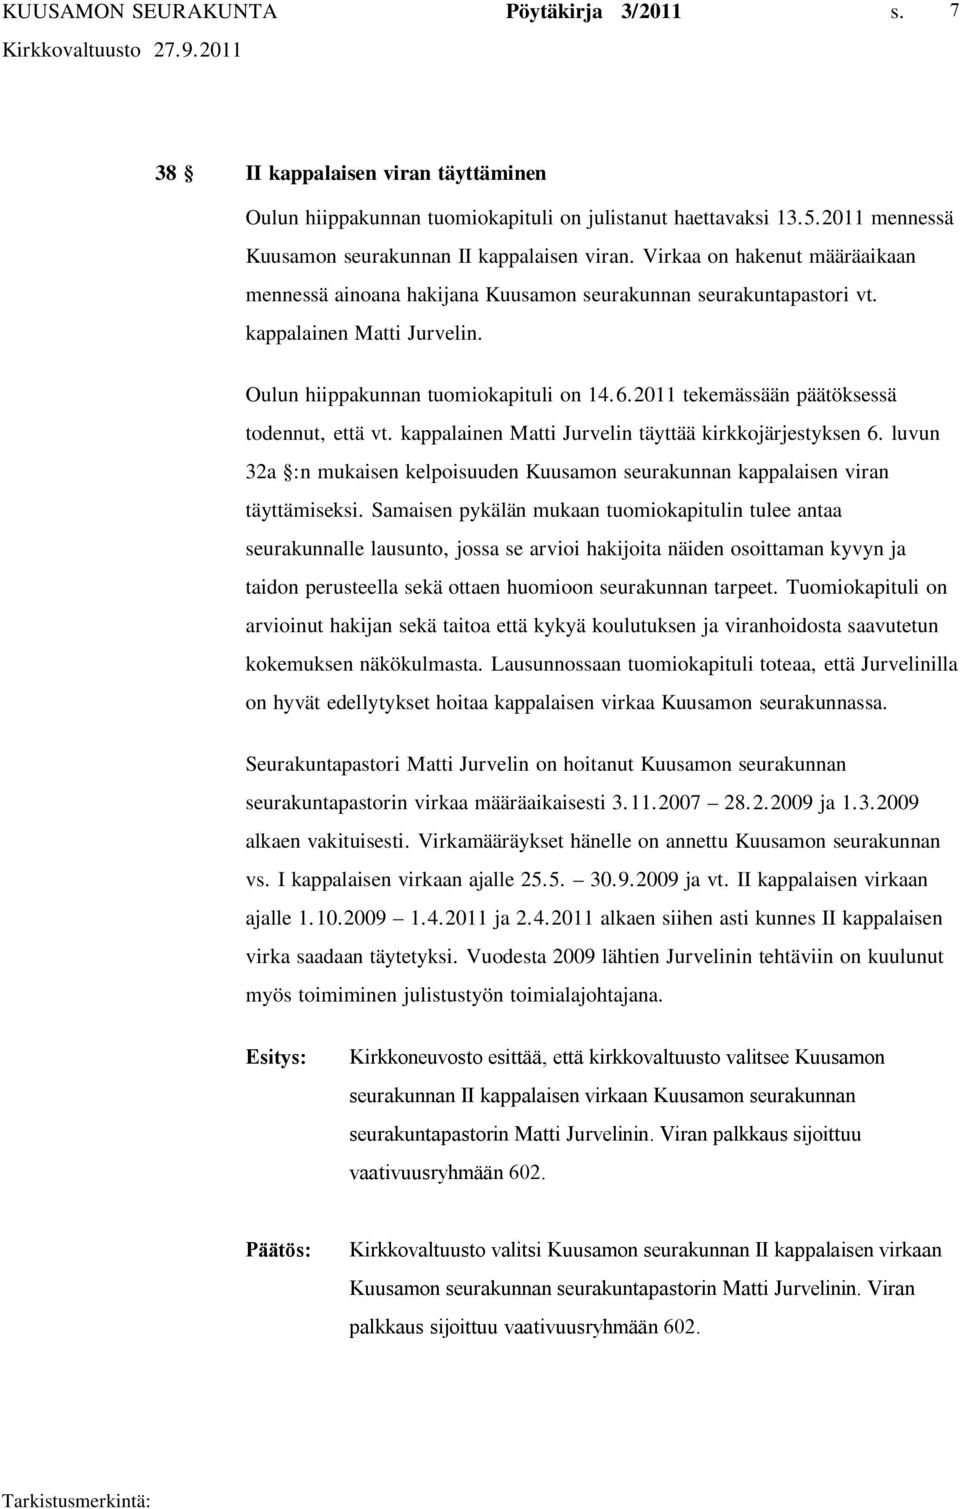 2011 tekemässään päätöksessä todennut, että vt. kappalainen Matti Jurvelin täyttää kirkkojärjestyksen 6. luvun 32a :n mukaisen kelpoisuuden Kuusamon seurakunnan kappalaisen viran täyttämiseksi.